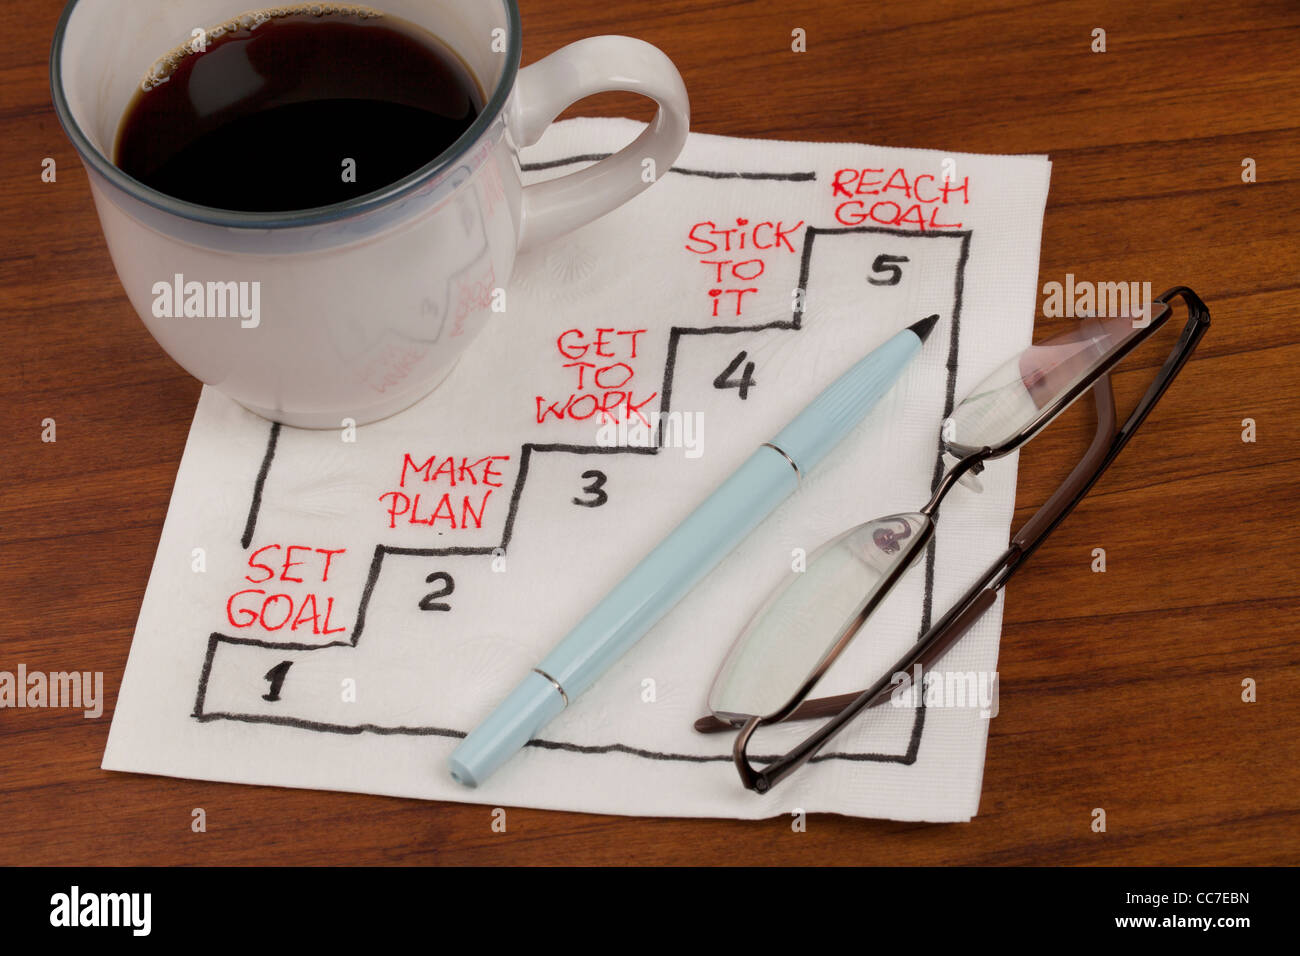 Objectif atteint en cinq étapes - Serviette concept croquis d'tasse à café et lunettes de lecture sur table en bois Banque D'Images